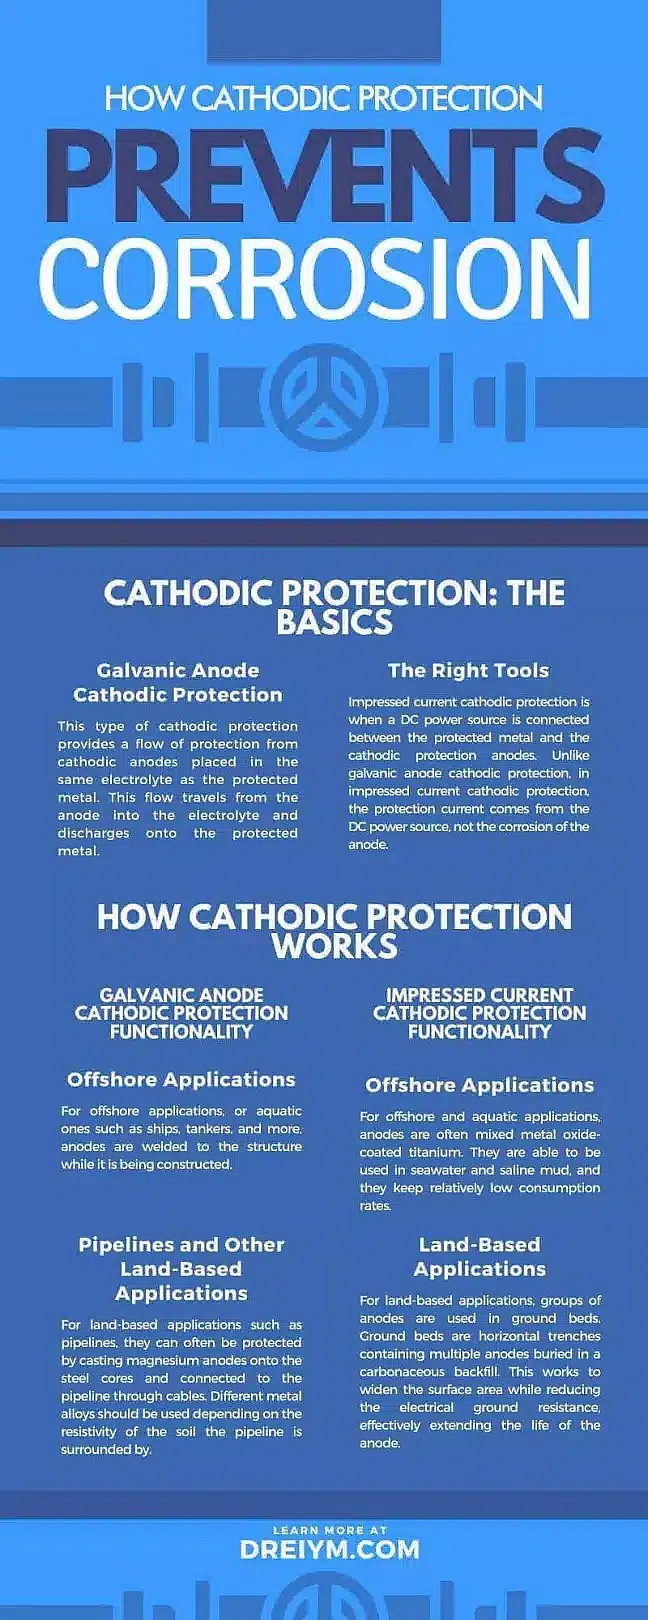 Cómo previene la corrosión la protección catódica